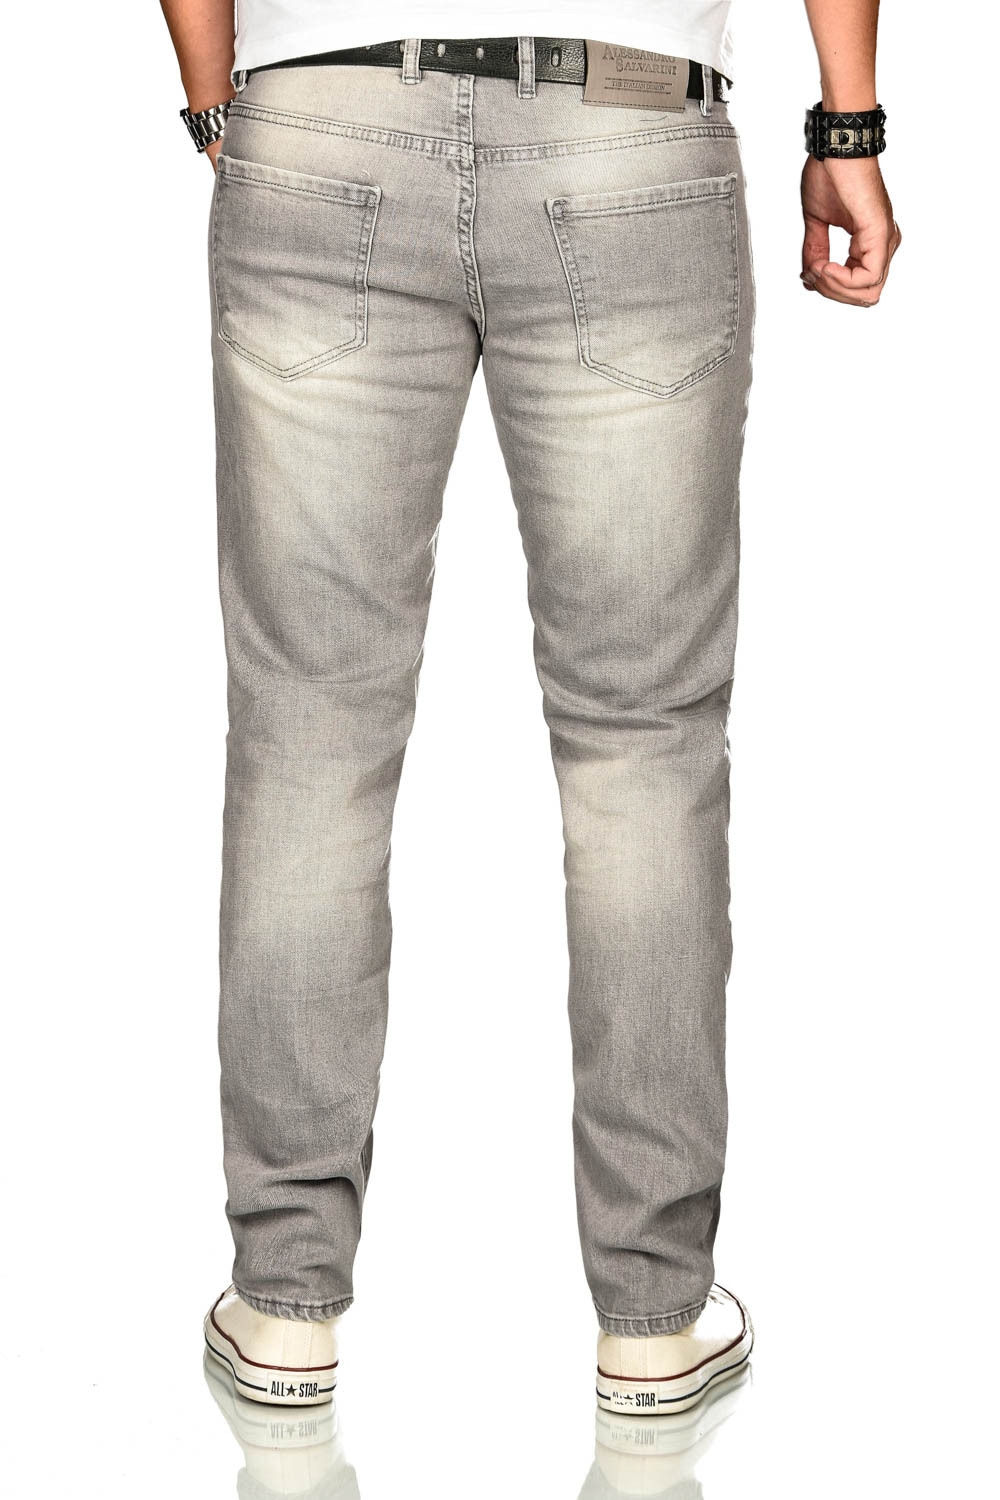 Alessandro Salvarini Stretch-Jeans »ASAngelo«, Angenehme Passform durch vorhandenen Elasthan Anteil